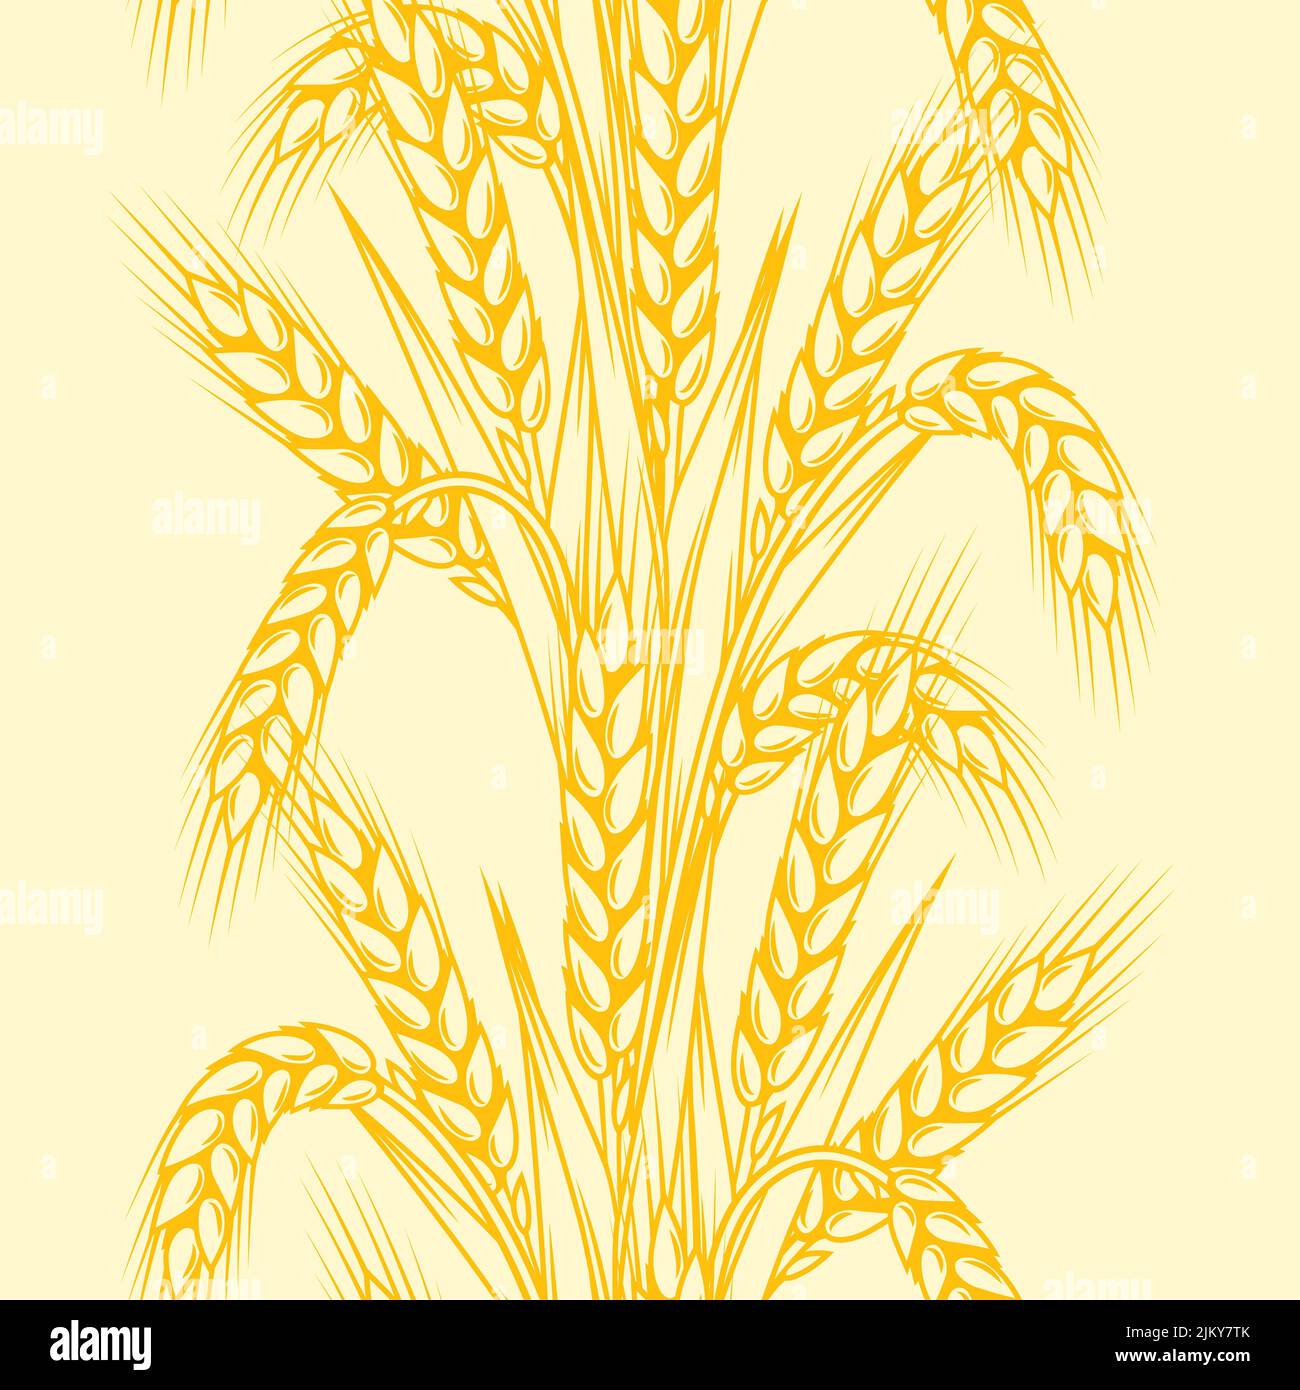 Nahtloses Muster mit Weizen. Landwirtschaftliches Bild mit natürlichen goldenen Ohren von Gerste oder Roggen. Stock Vektor